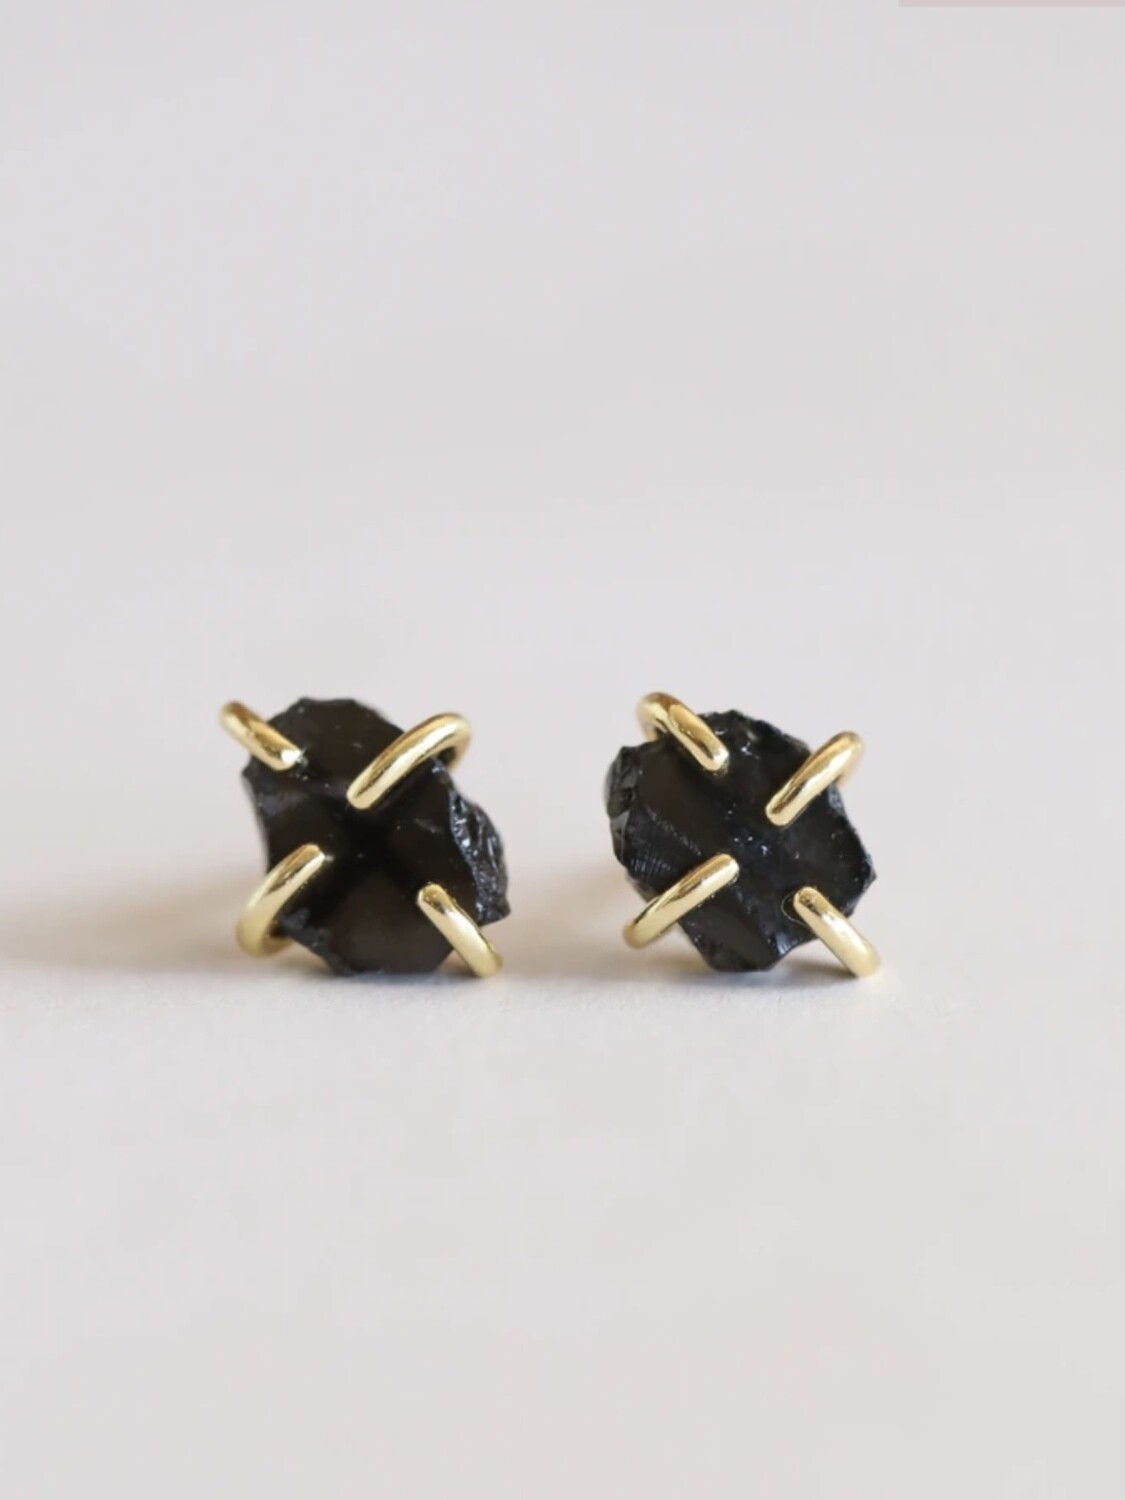 Obsidian Gemstone Prong Set Post - 18k Gold Over Silver - JK35